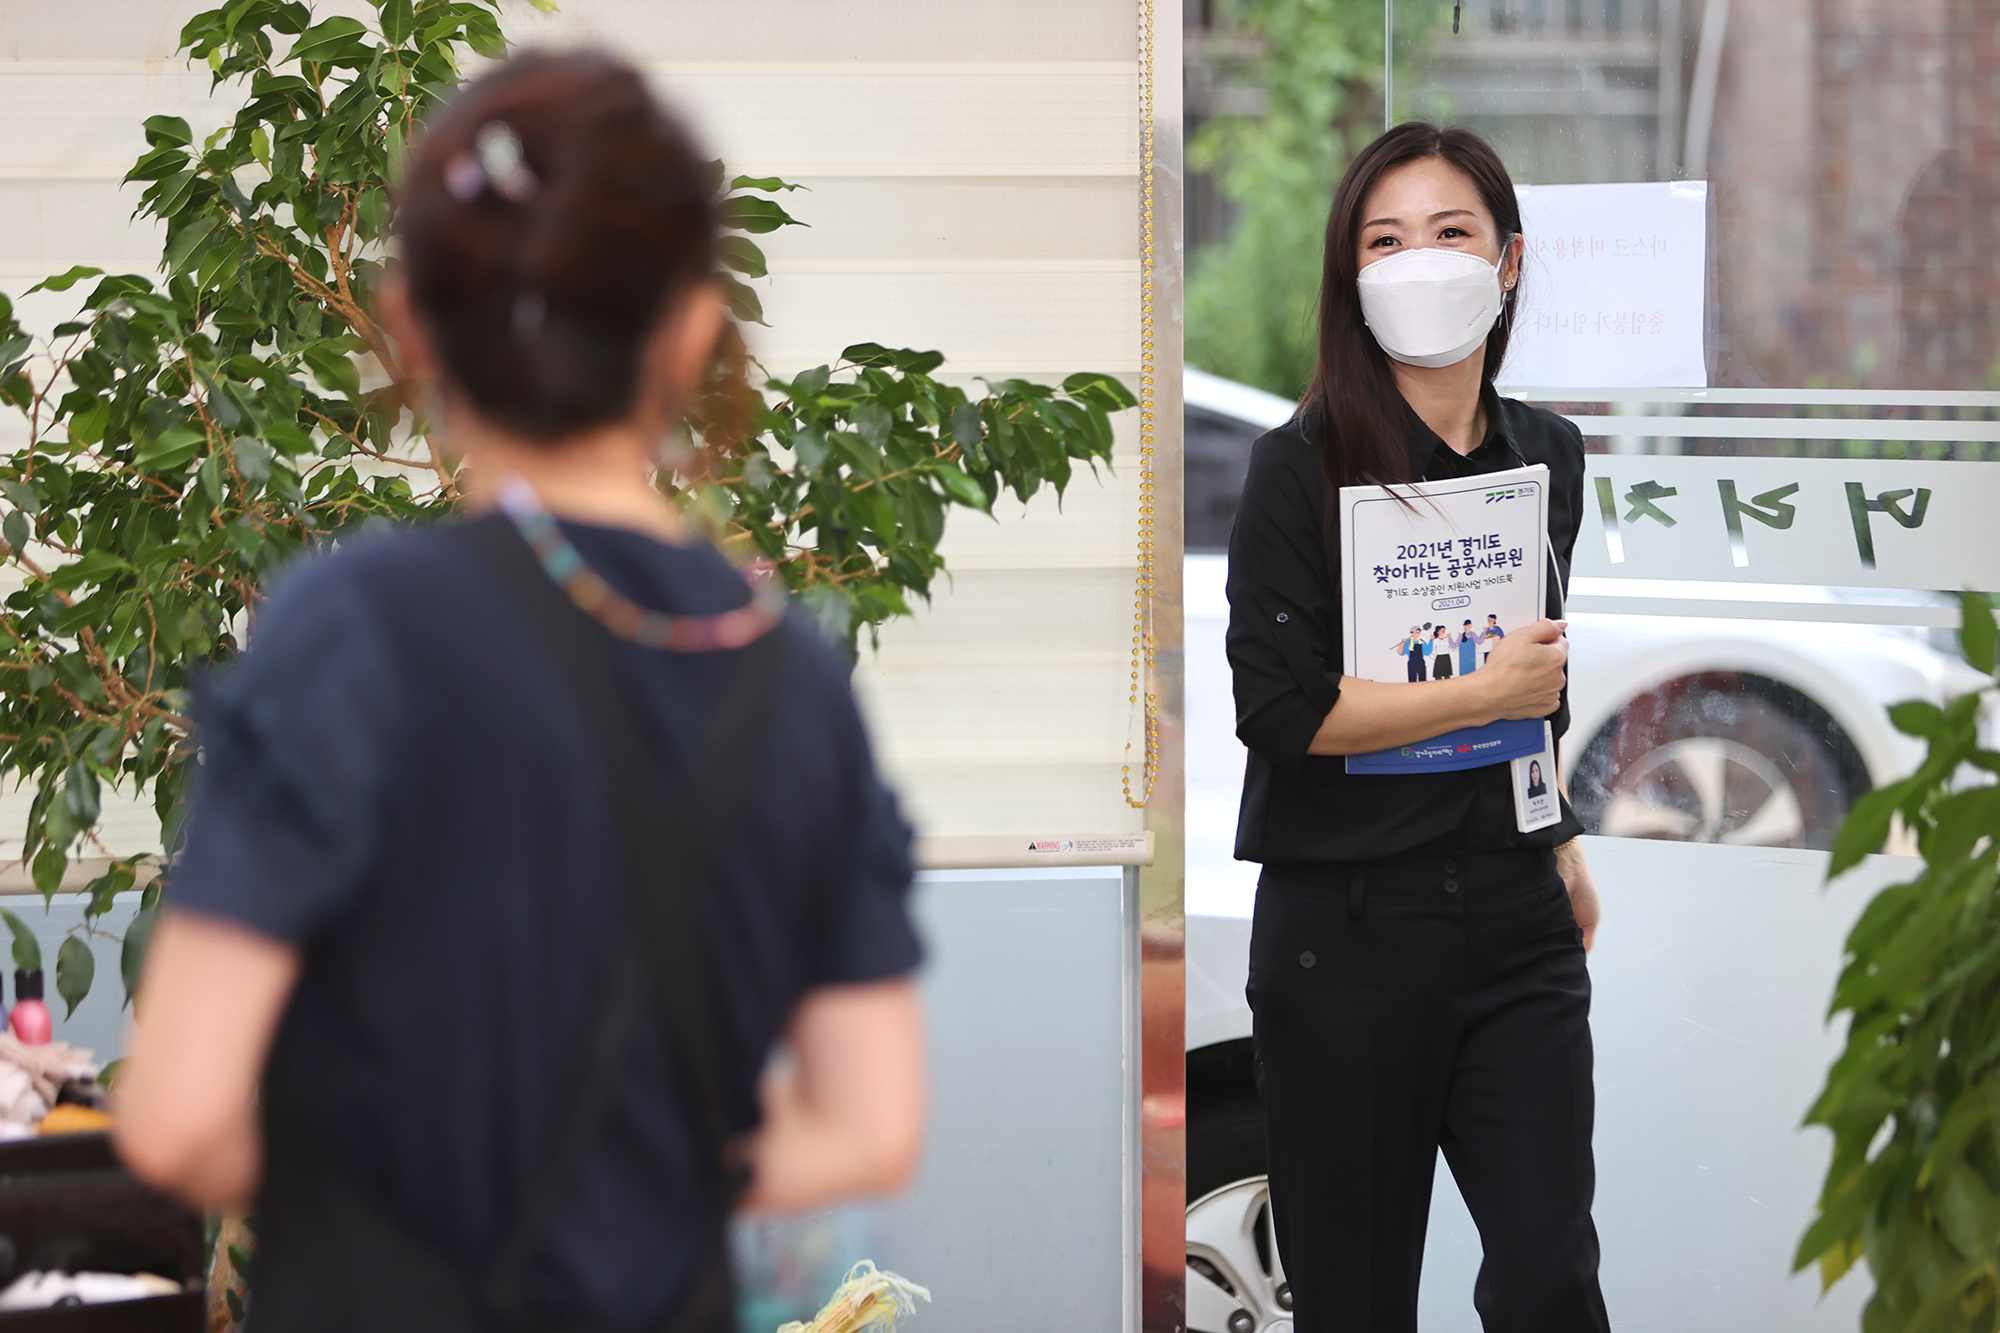 경기도 공공사무원 박미란 씨가 소상공인 지원 사업 안내를 위해 안산시 소재 미용실을 방문하고 있다.